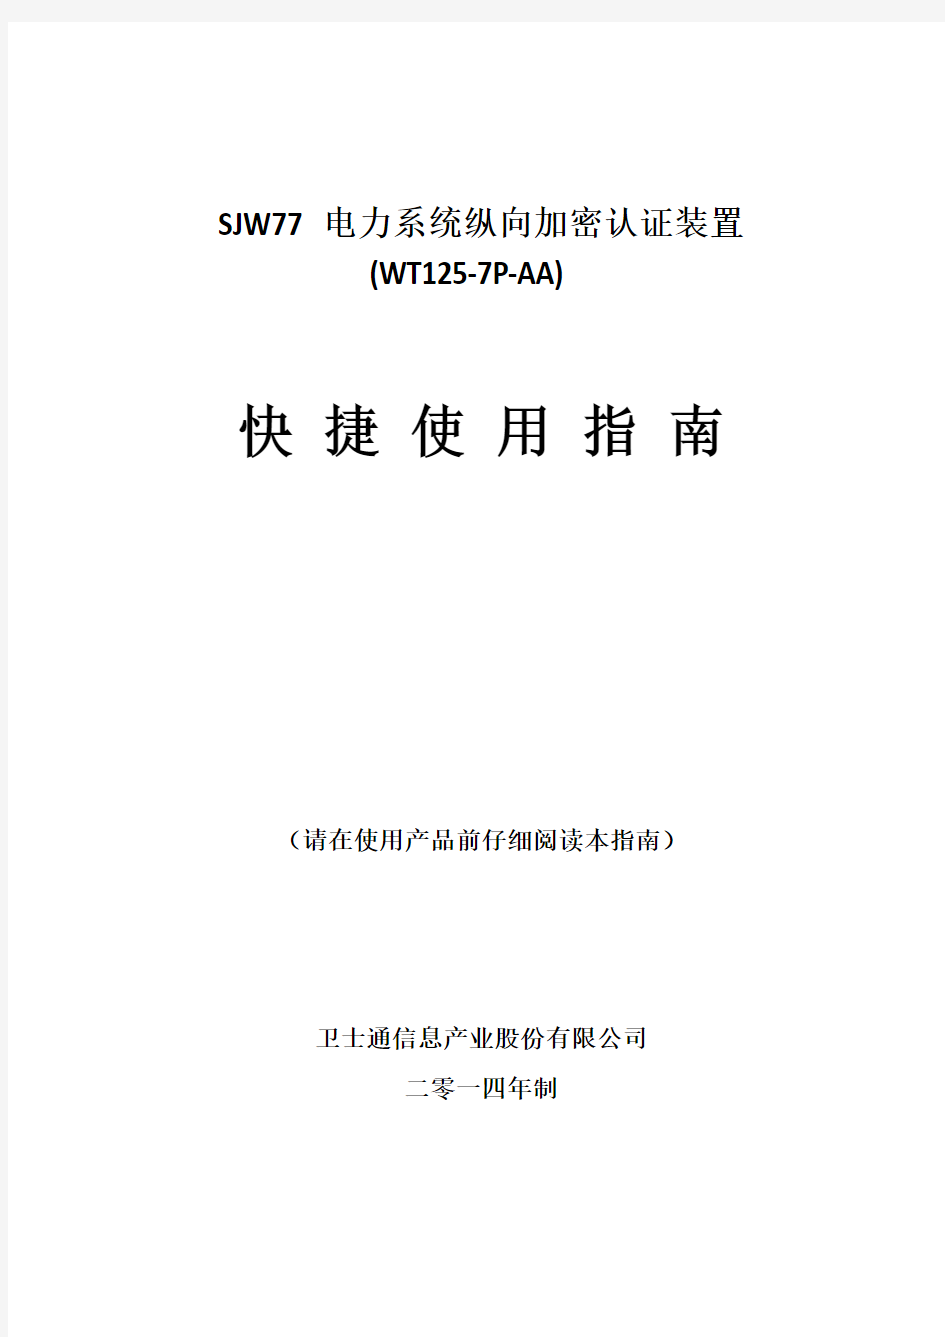 SJW77电力系统纵向加密认证装置快捷使用指南